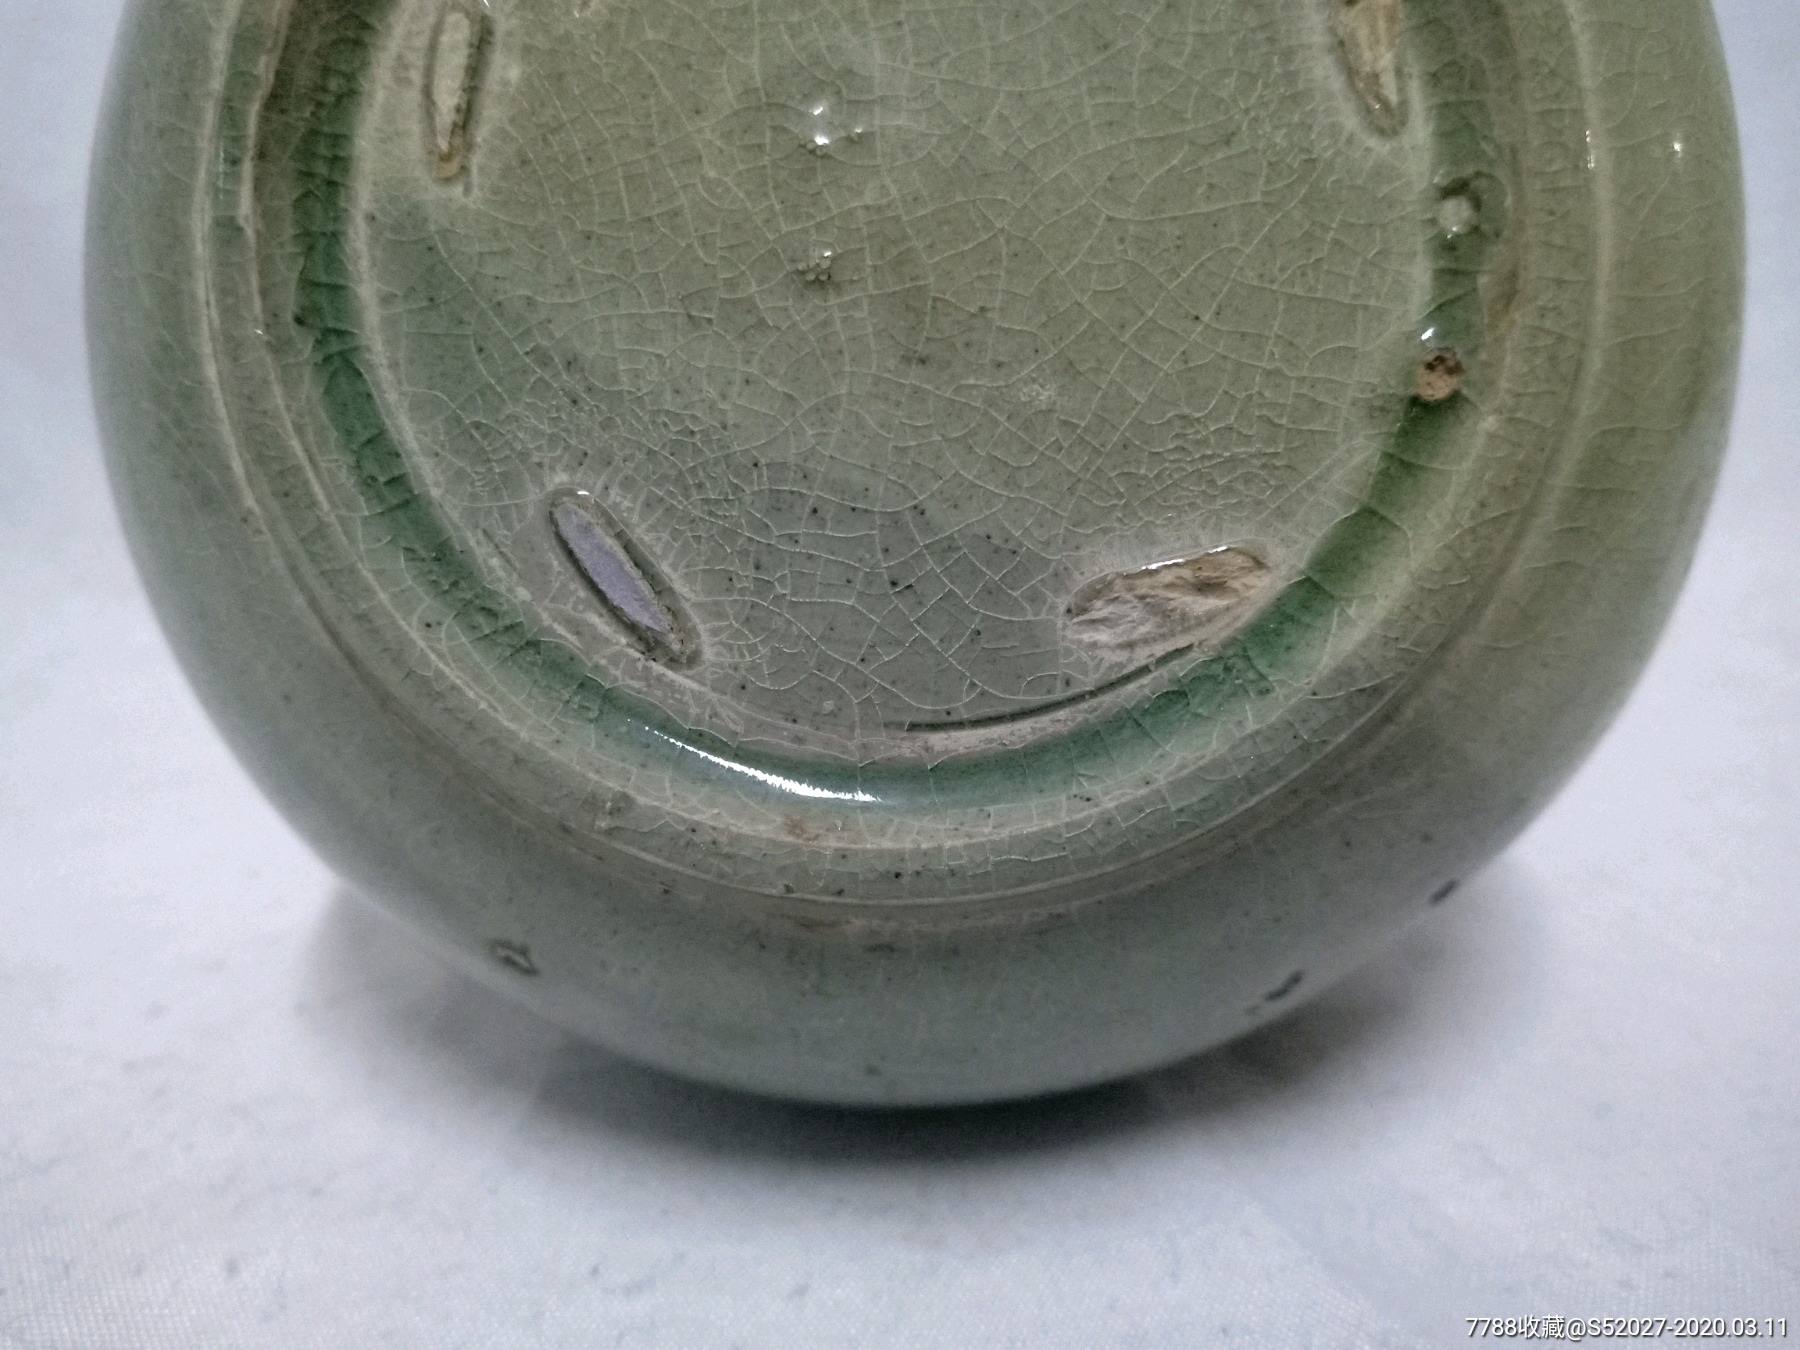 唐五代越窑青瓷圆口瓶.高16.3厘米,直径11.9厘米.